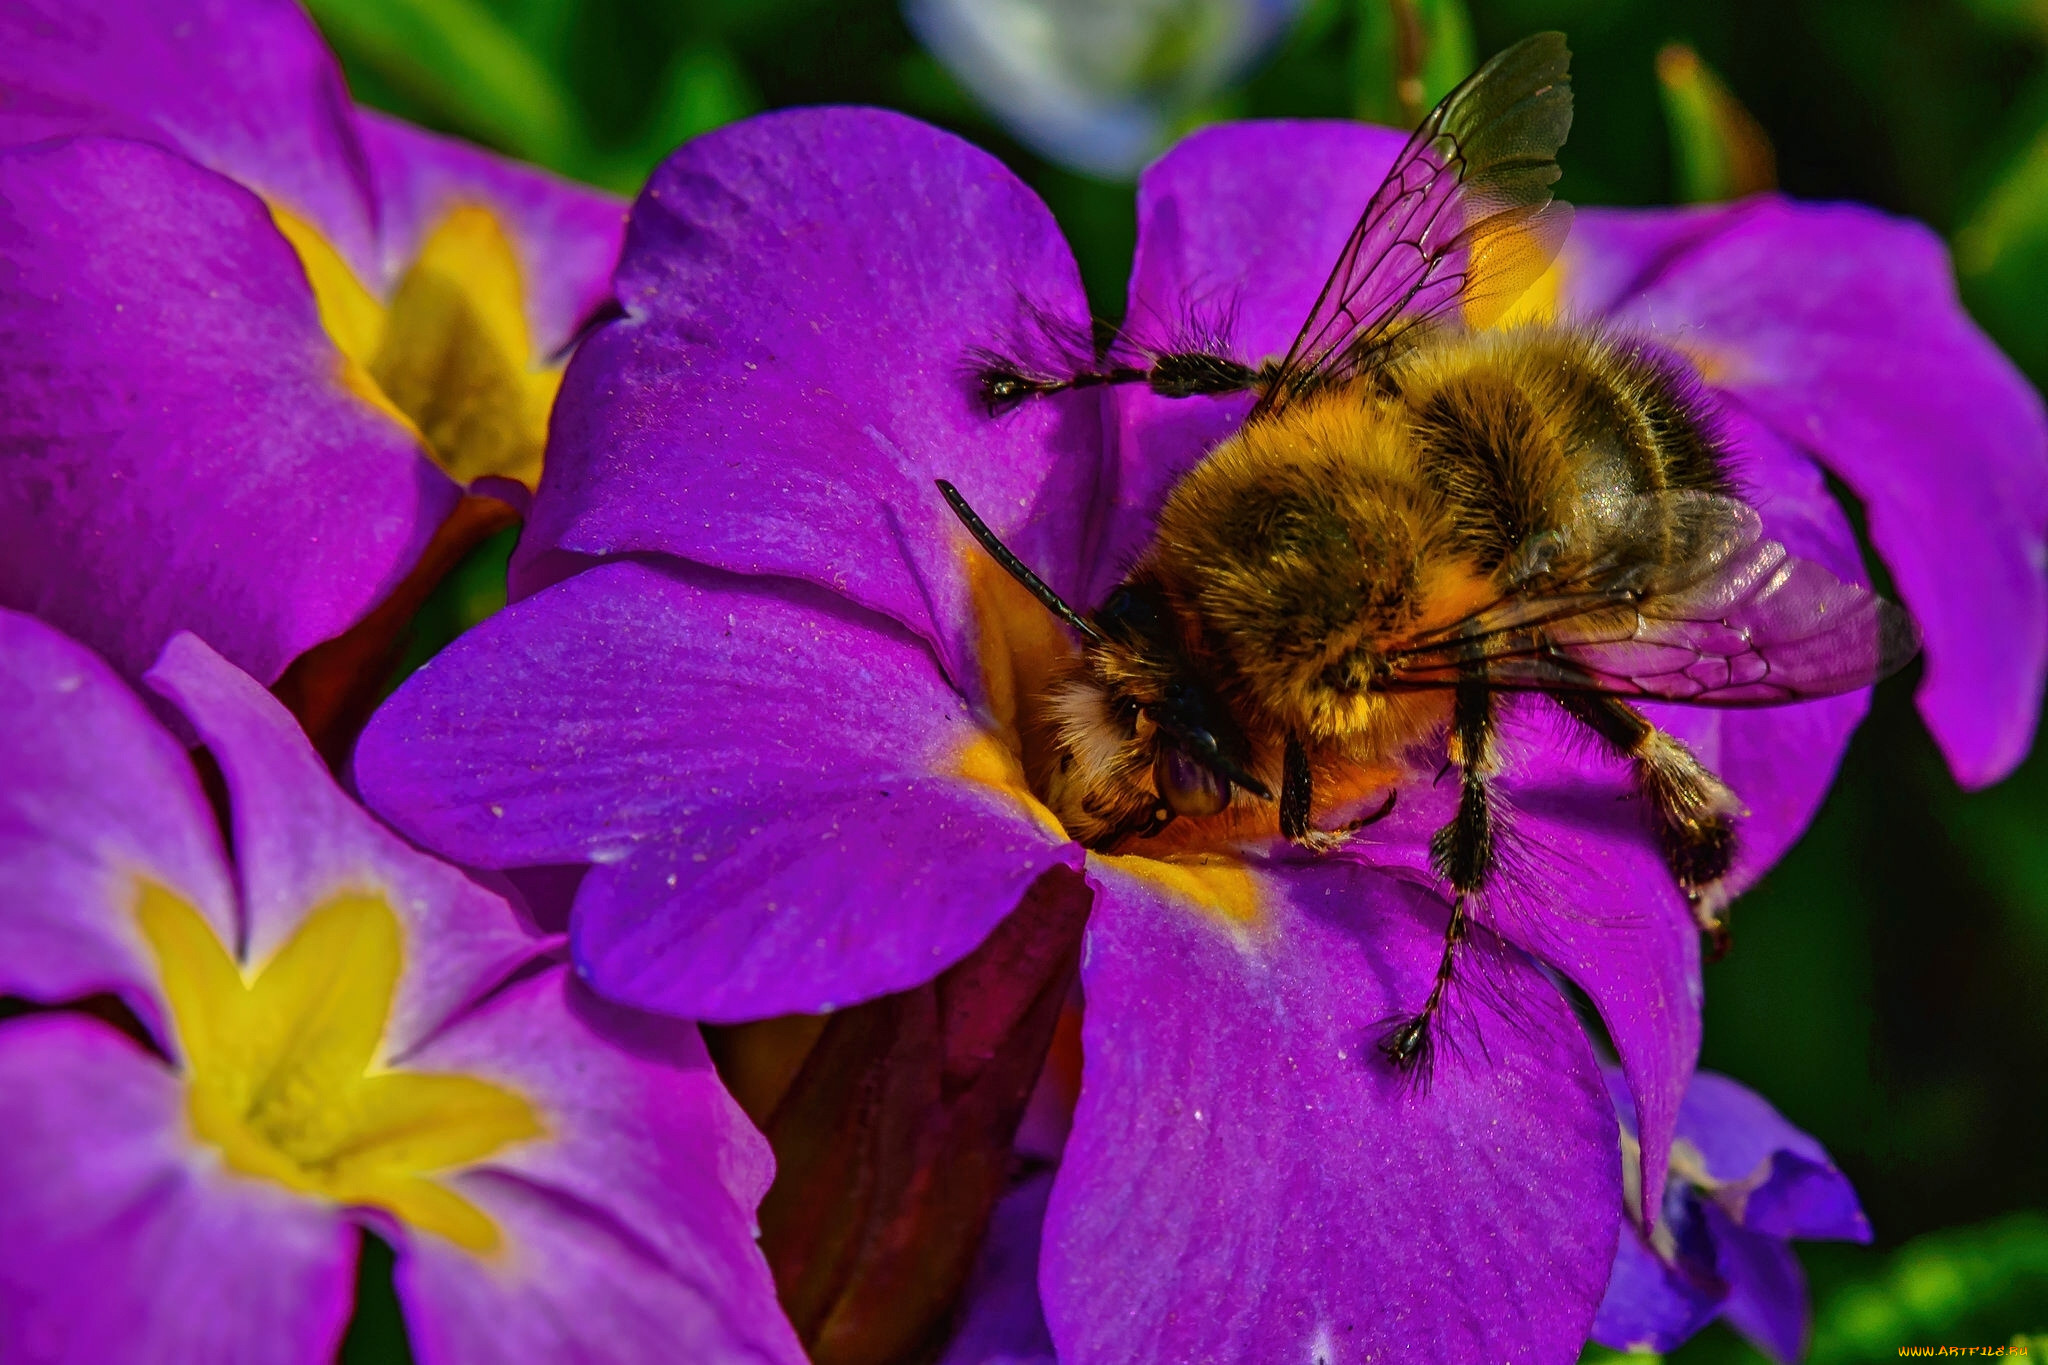 Югана опылители. Шмели опылители. Шмель опыляет. Примула (первоцвет) и пчела. Медоносная пчела на фиолетовом цветке.